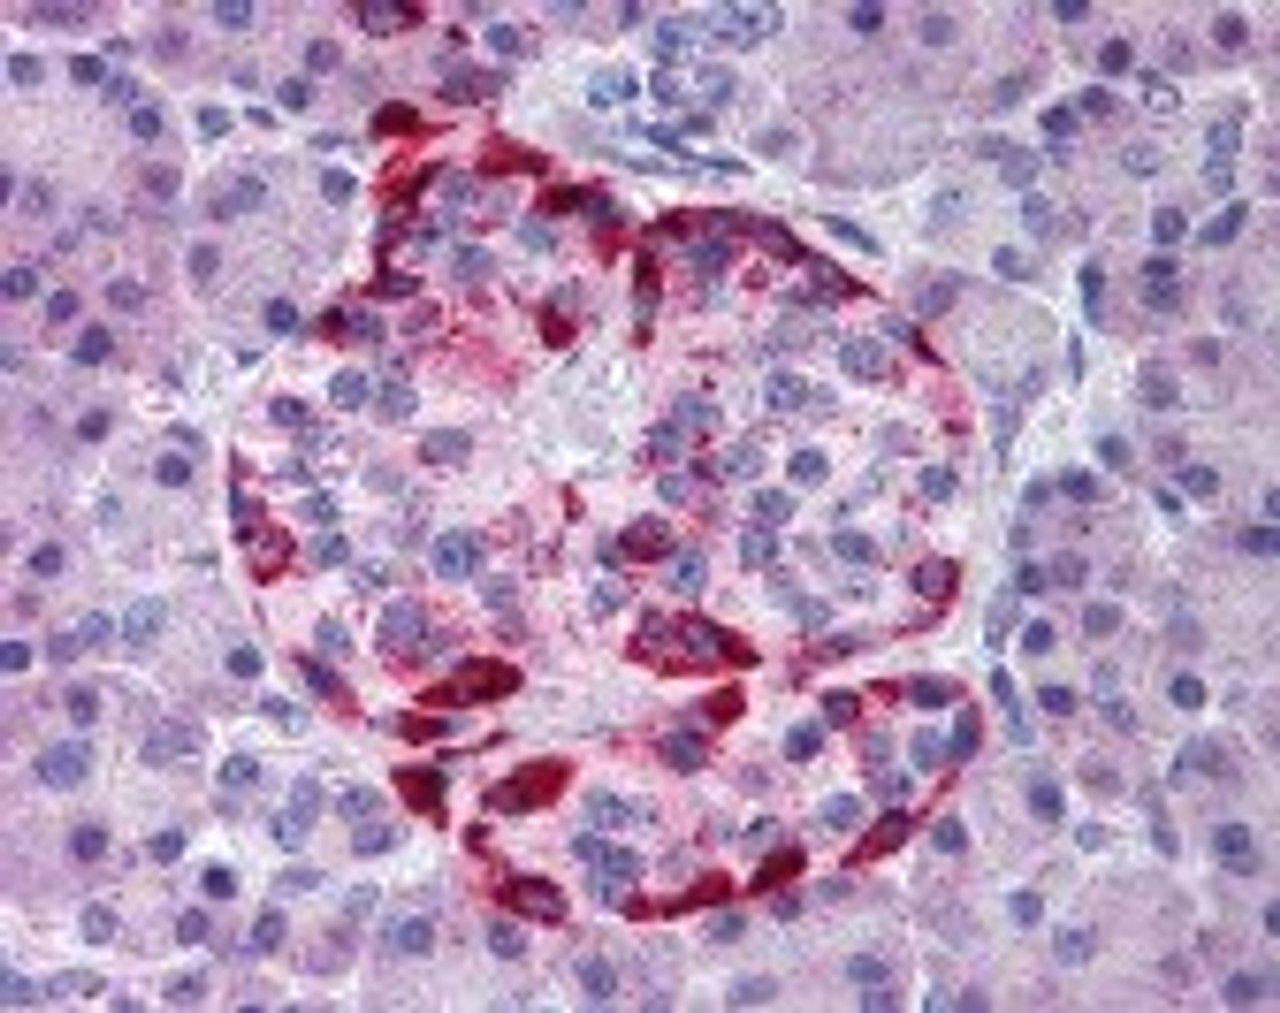 Immunohistochemistry staining of EPHA2 in pancreas tissue using EPHA2 Antibody.